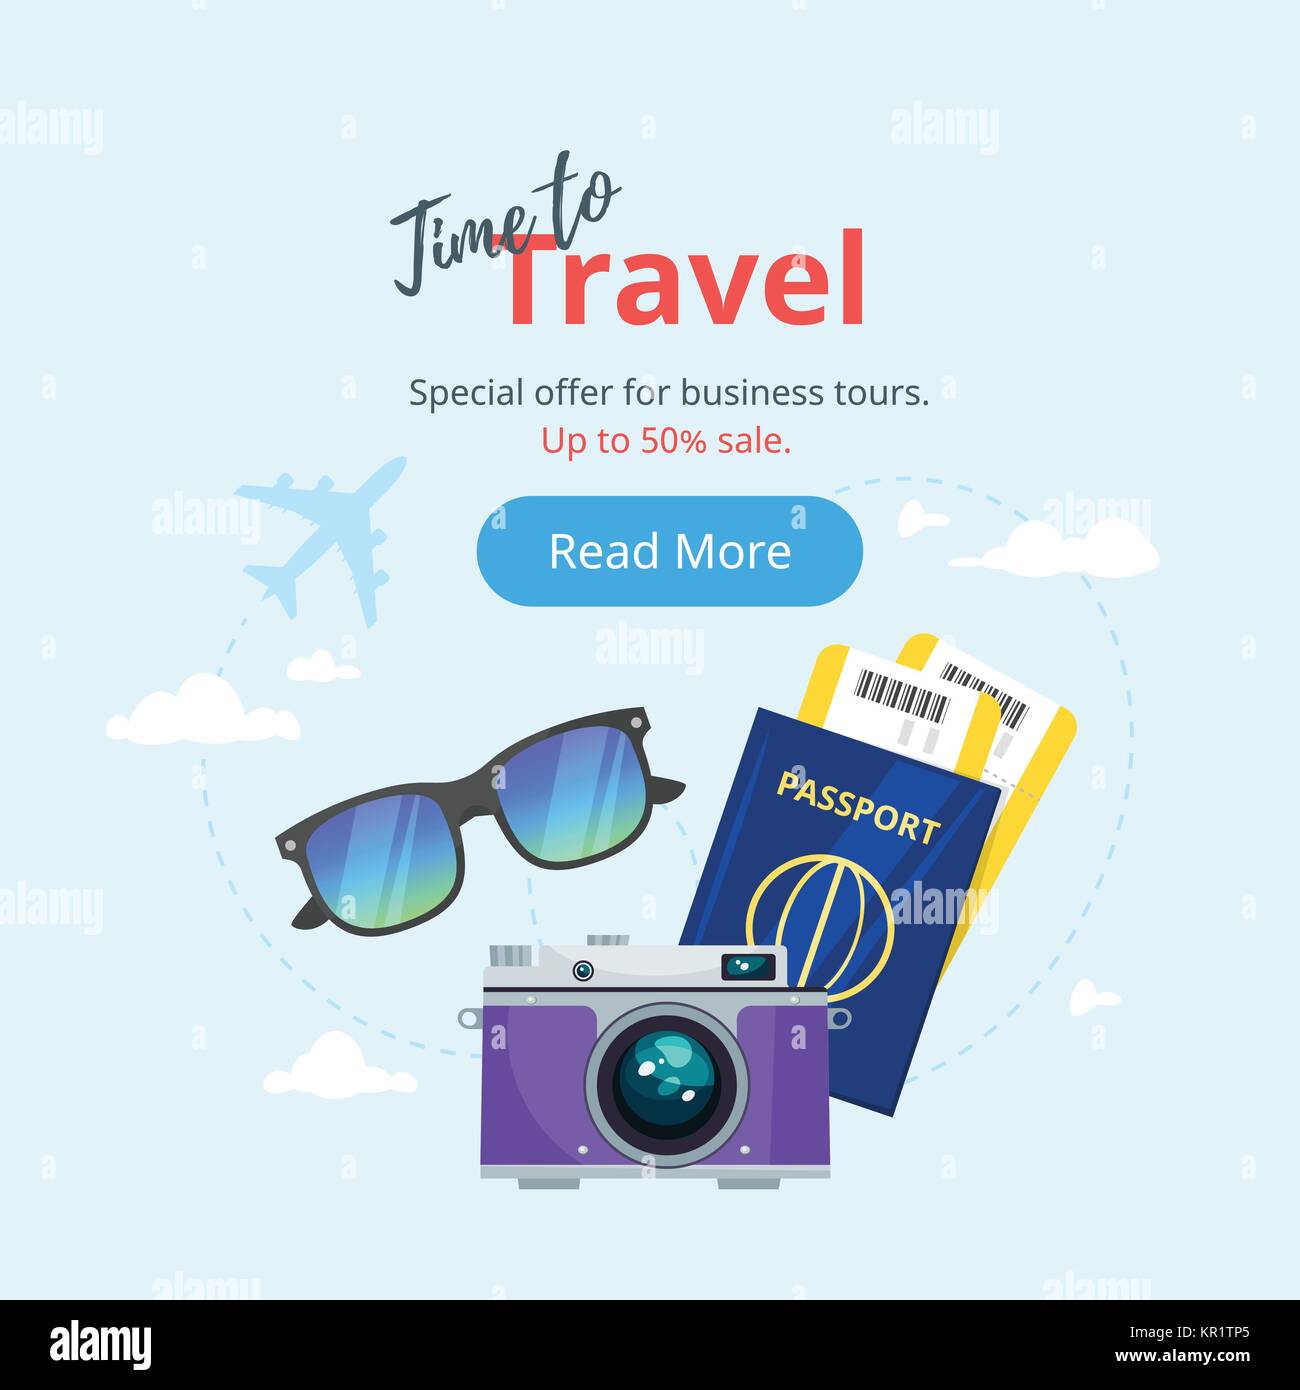 Agora NTravel é Rexturadvance – N Travel